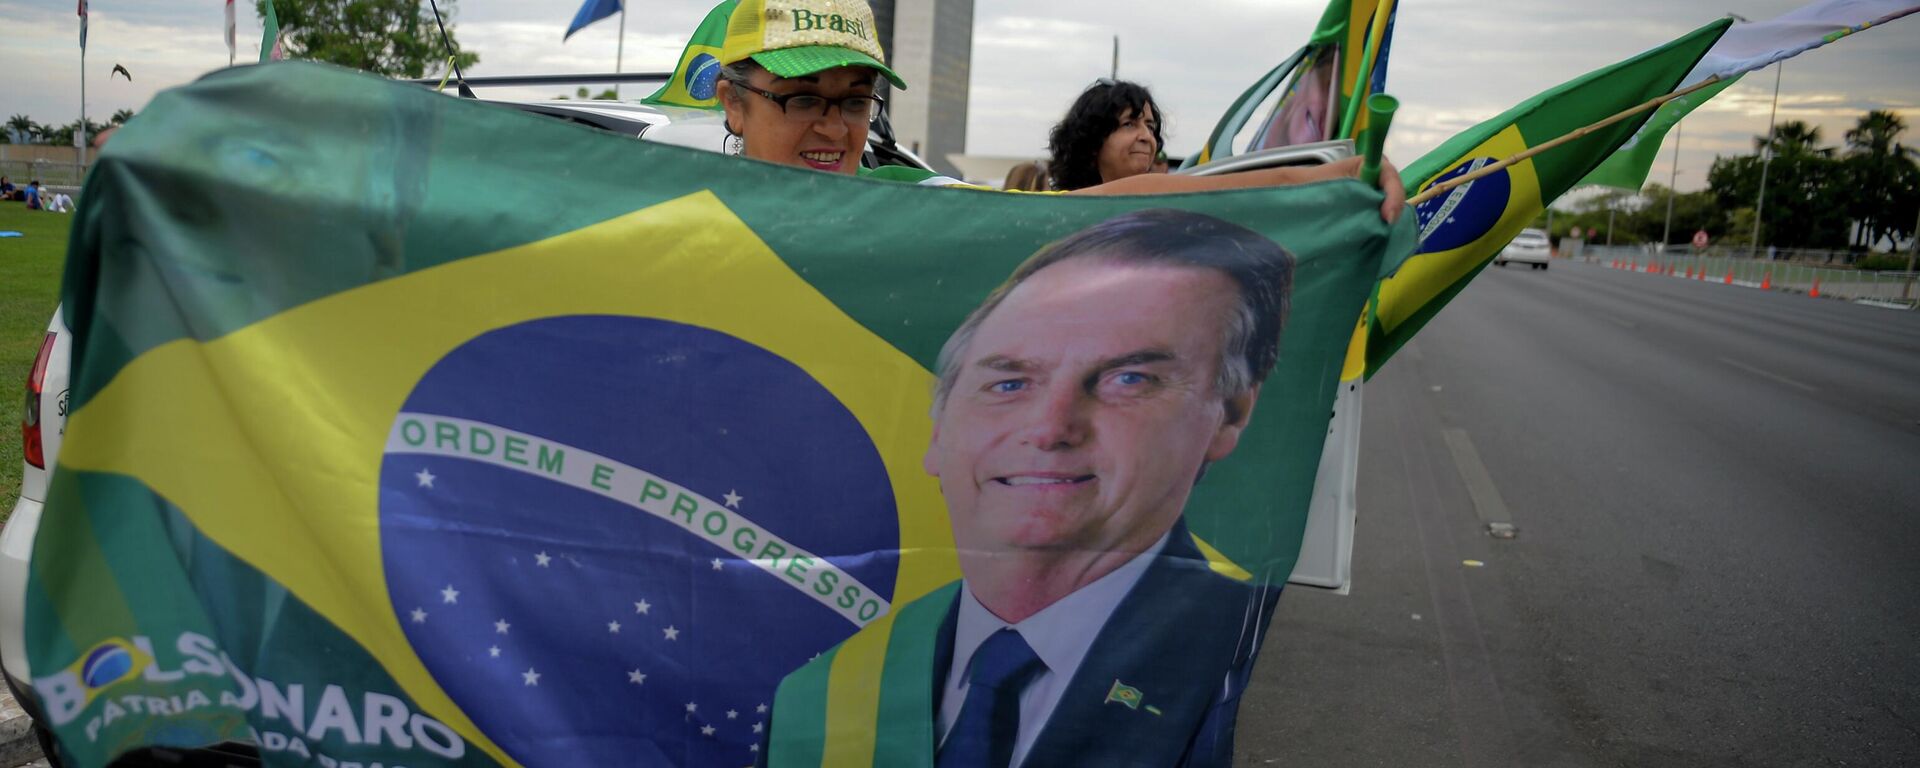 Una mujer sostiene una bandera con la imagen del presidente de Brasil, Jair Bolsonaro en las elecciones presidenciales - Sputnik Mundo, 1920, 31.10.2022